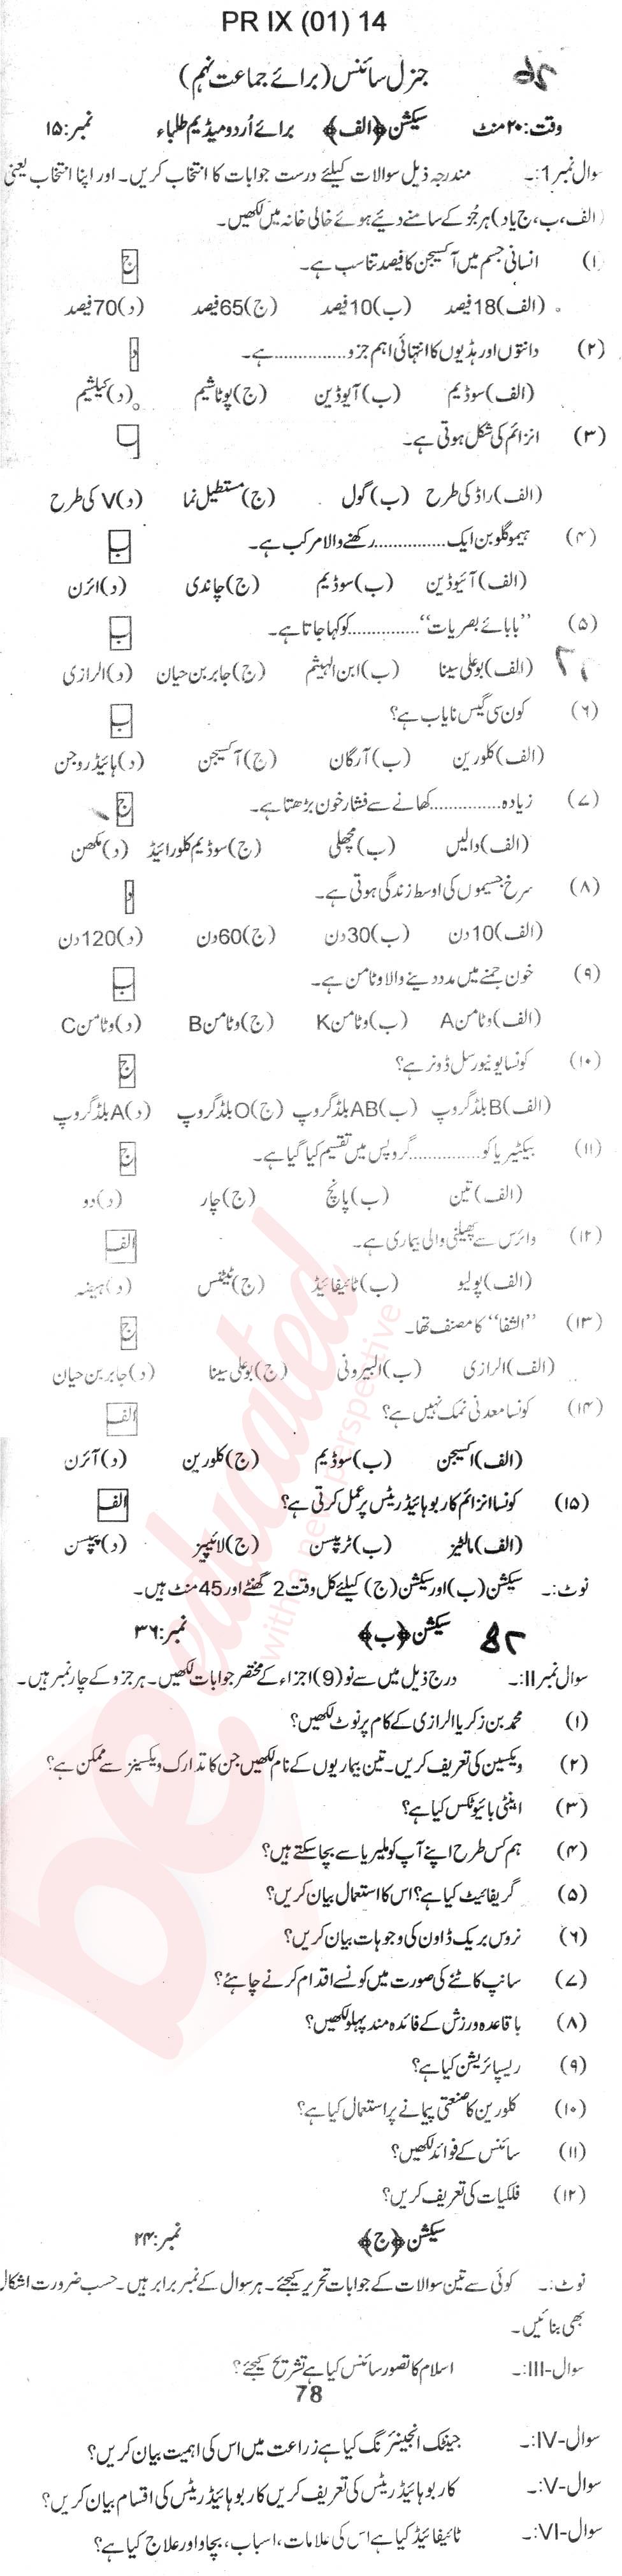 General Science 9th Urdu Medium Past Paper Group 1 BISE DI Khan 2014